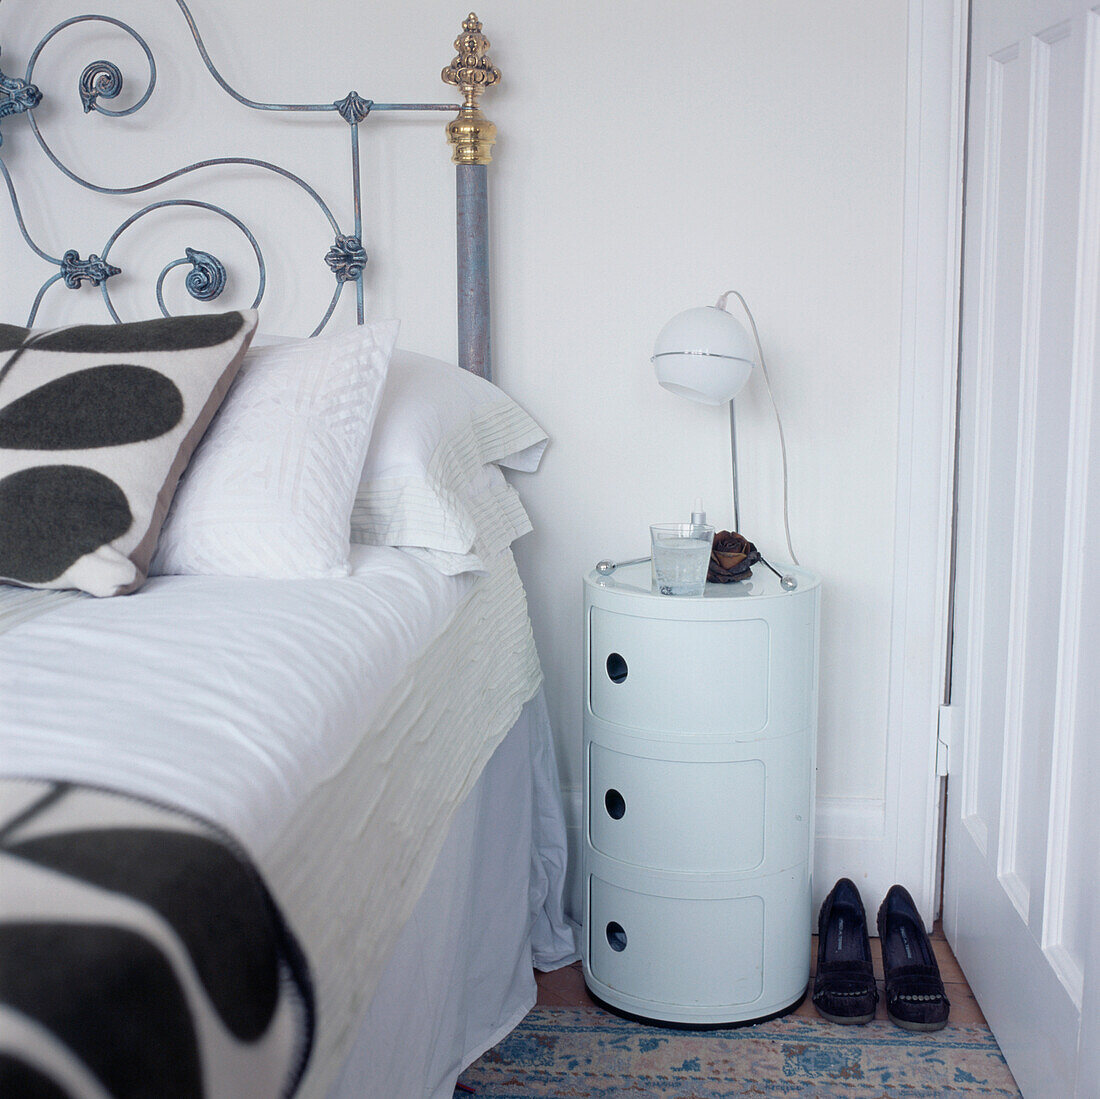 Weißes Schlafzimmer mit verschnörkeltem Bett im Vintage-Stil, schwarz-weiß gemusterter Bettwäsche und einem weißen Nachttisch